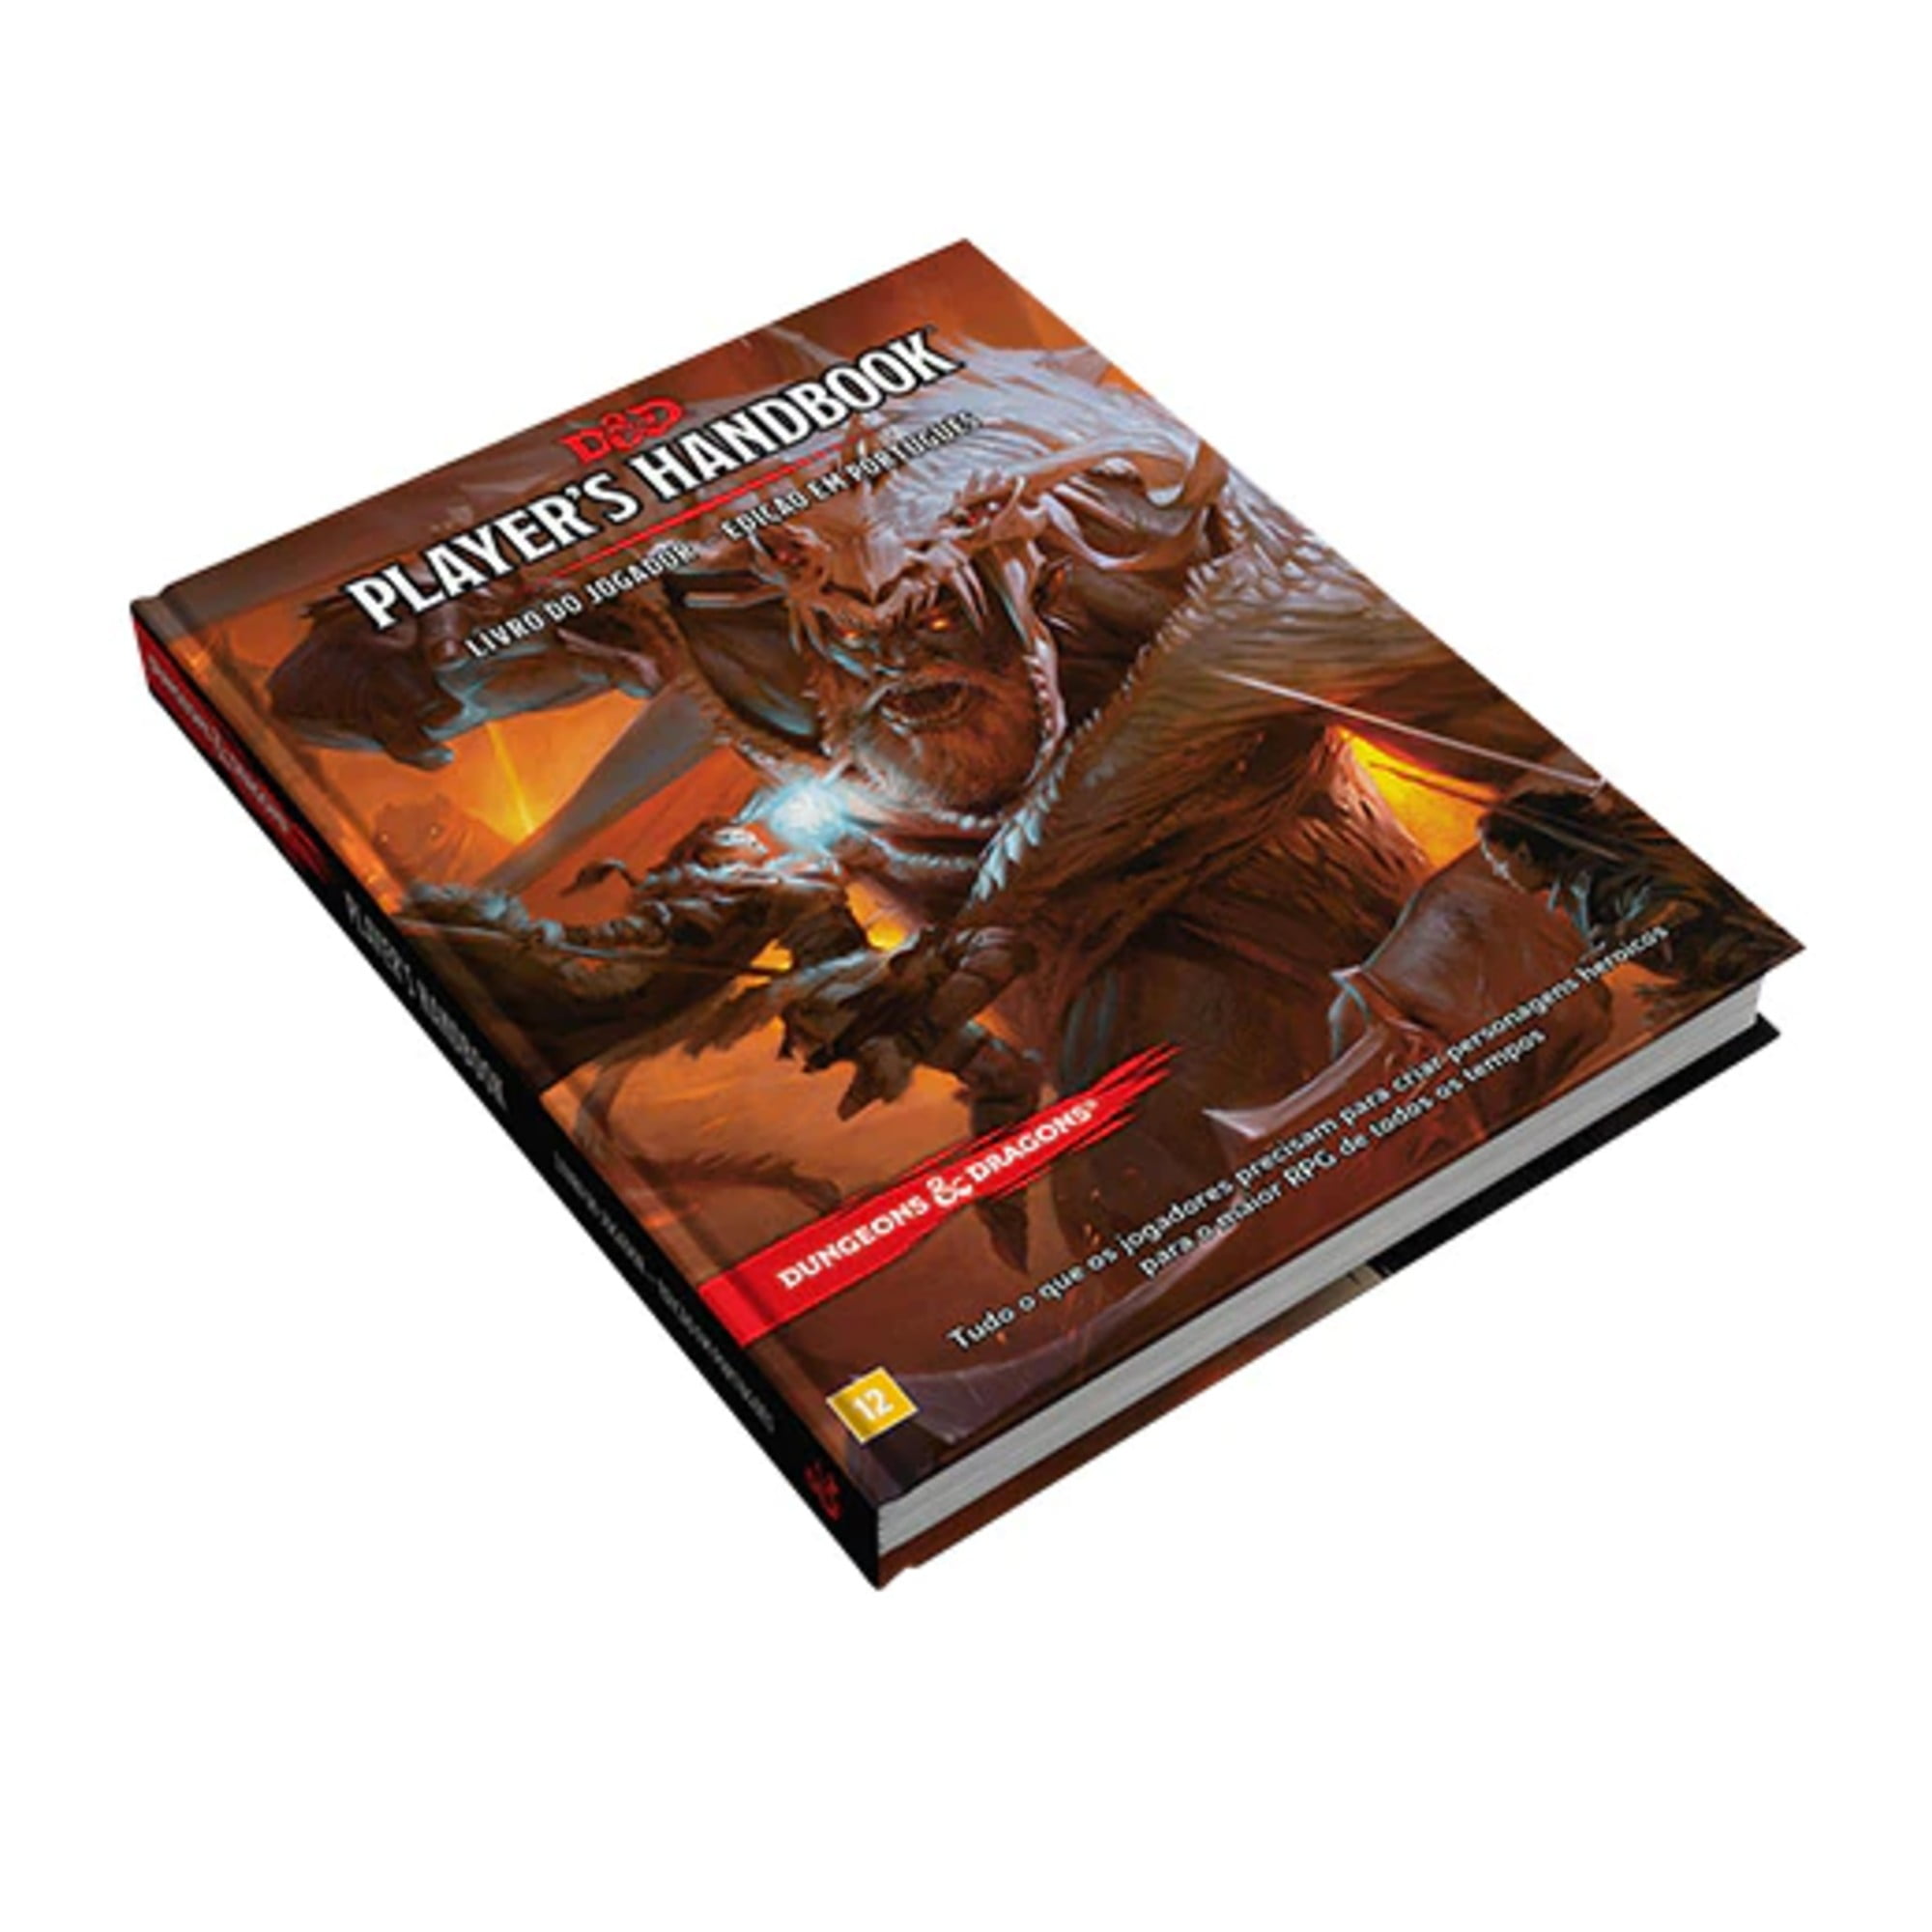 Dungeons & Dragons - O Livro do Jogador